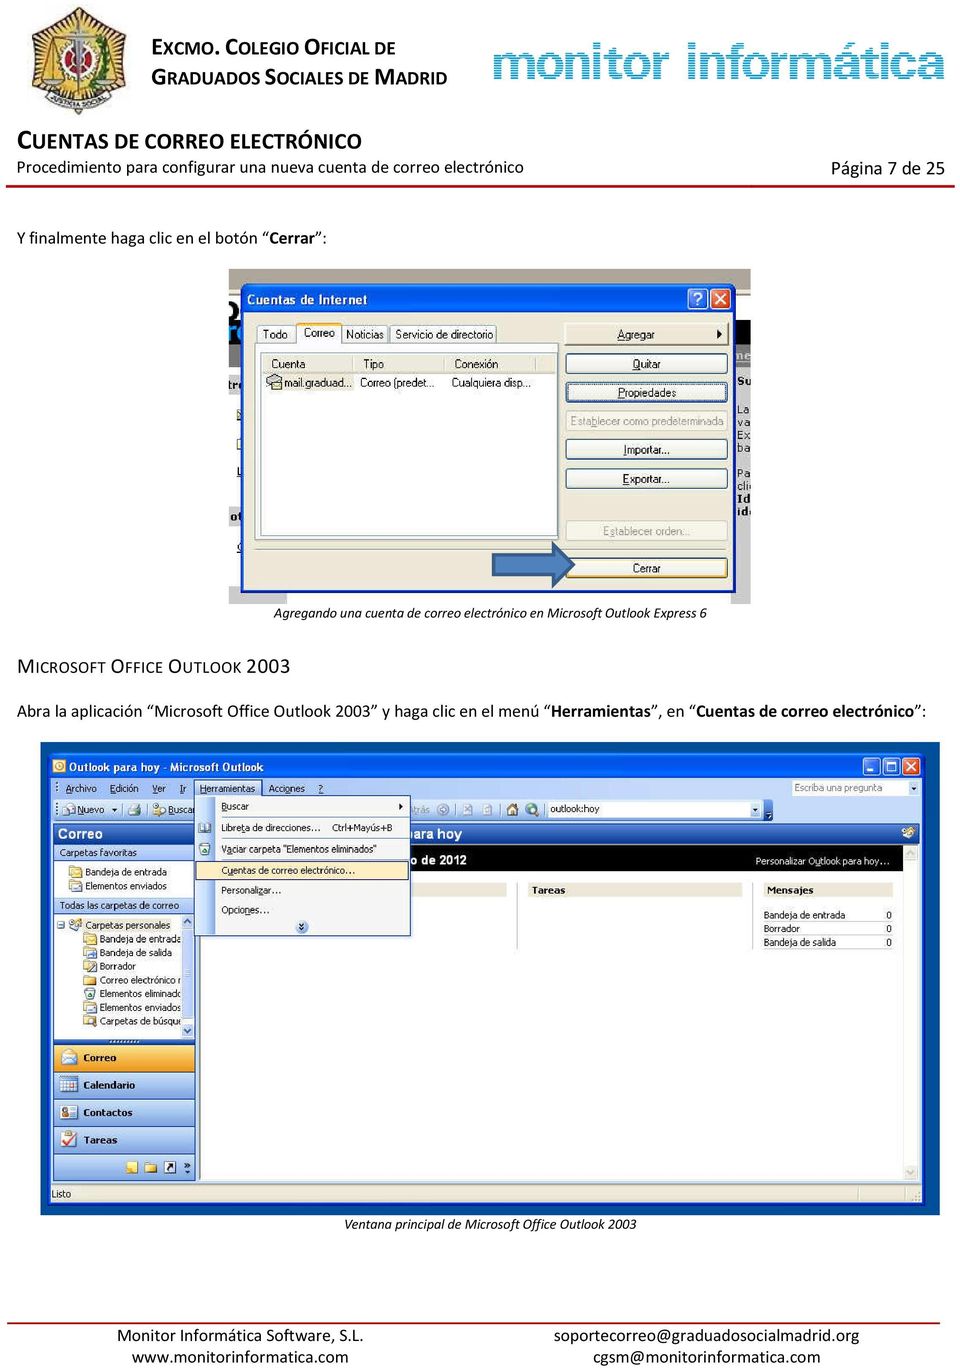 Abra la aplicación Microsoft Office Outlook 2003 y haga clic en el menú